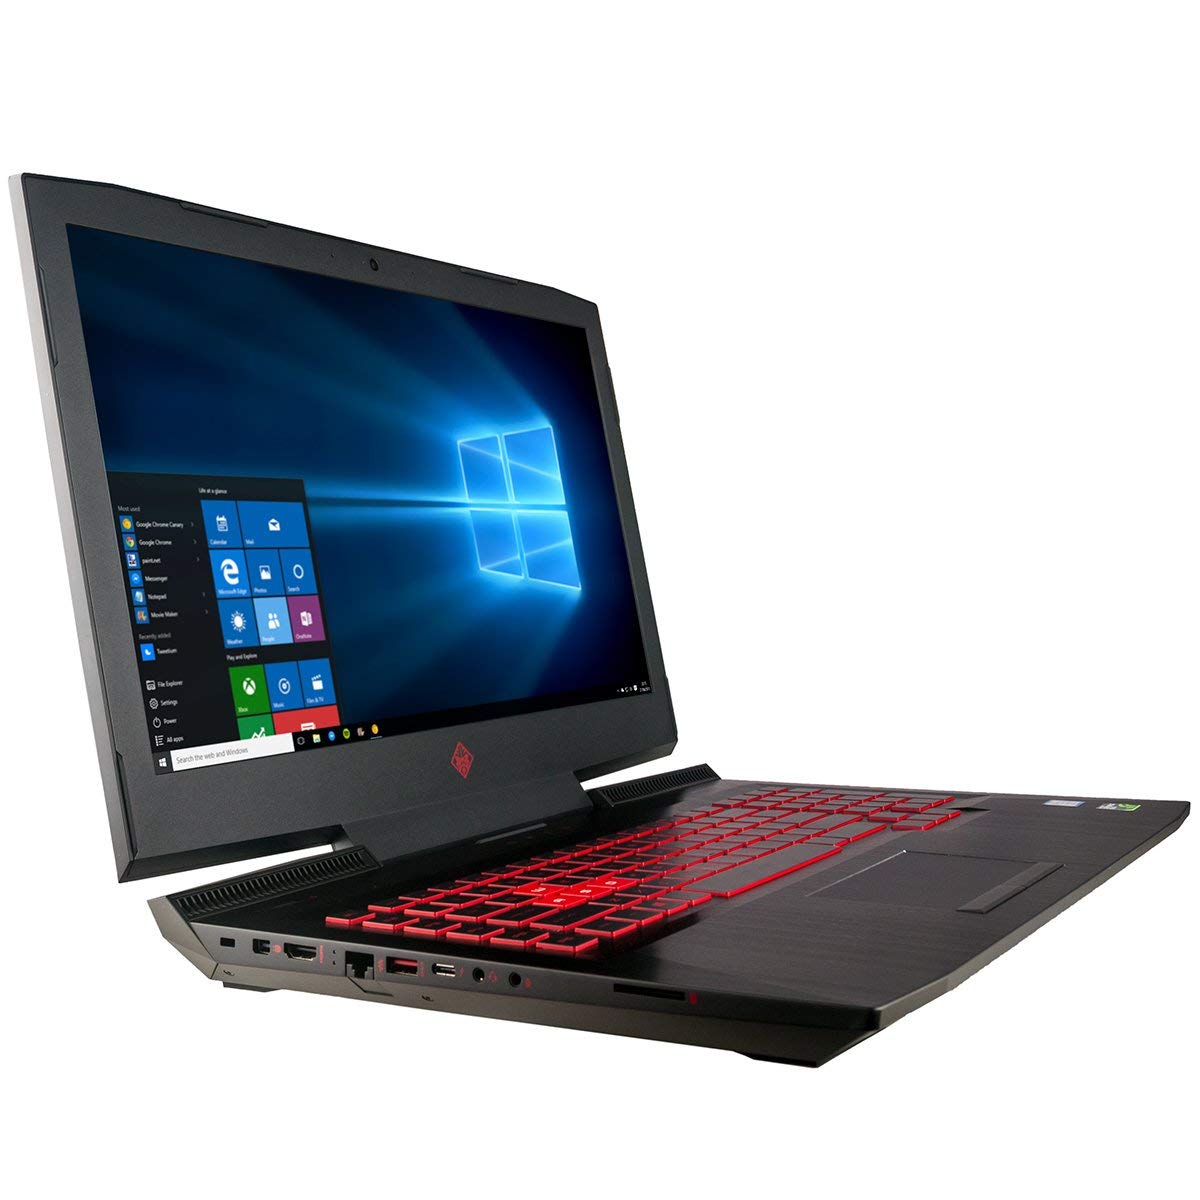 HP Omen 17t (i7-8750H, GTX 1070) Laptop Review - NotebookCheck.net 